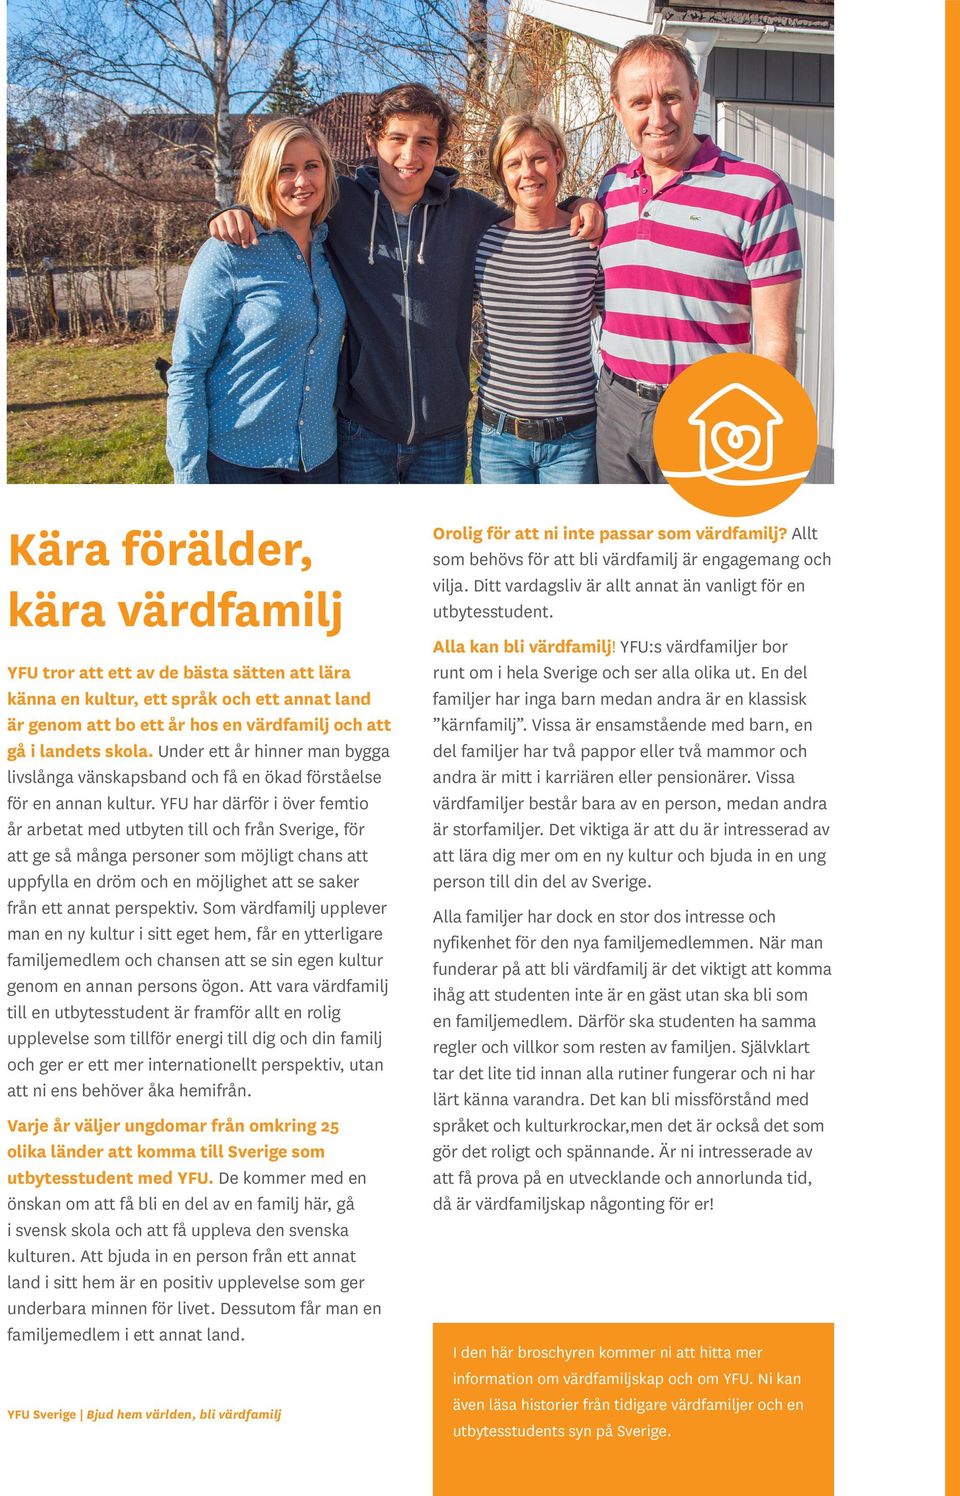 YFU har därför i över femtio år arbetat med utbyten till och från Sverige, för att ge så många personer som möjligt chans att uppfylla en dröm och en möjlighet att se saker från ett annat perspektiv.